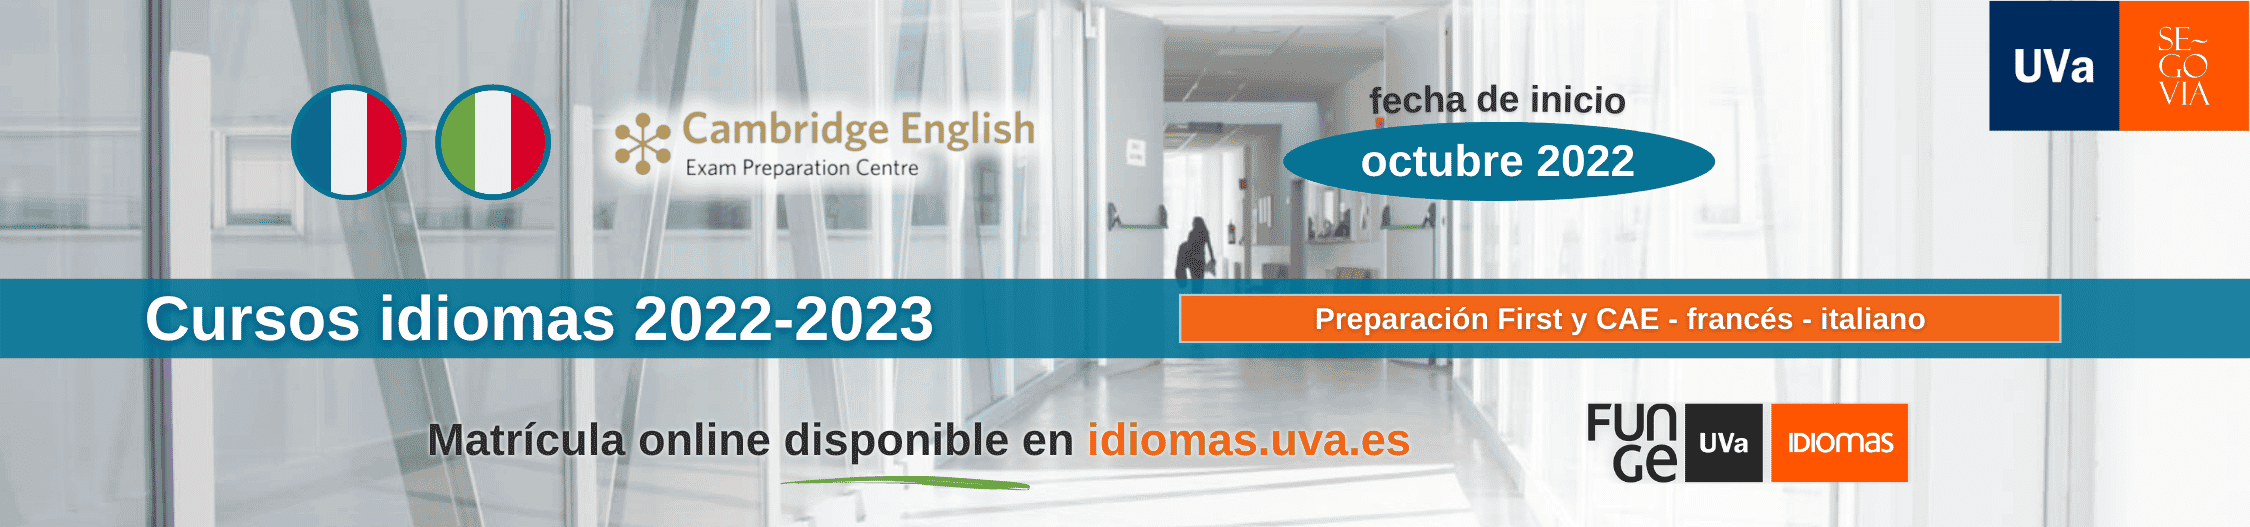 Banner preparacion First y CertACLES Campus de Segovia Centro de Idiomas UVa 22 23